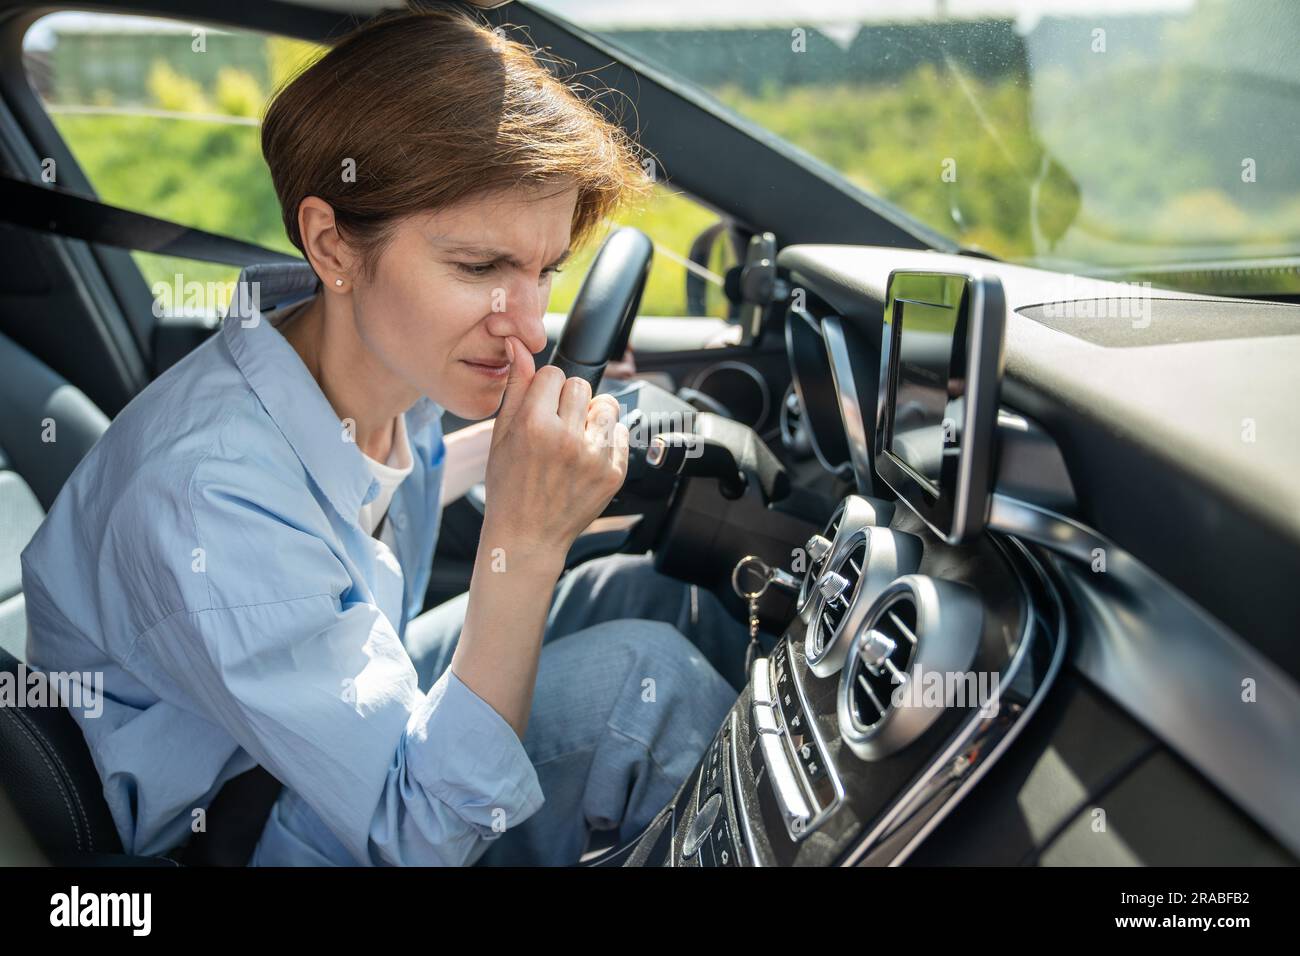 Donna conducente che sente un odore sgradevole proveniente dall'impianto di climatizzazione durante la guida di un'auto con clima caldo. Foto Stock